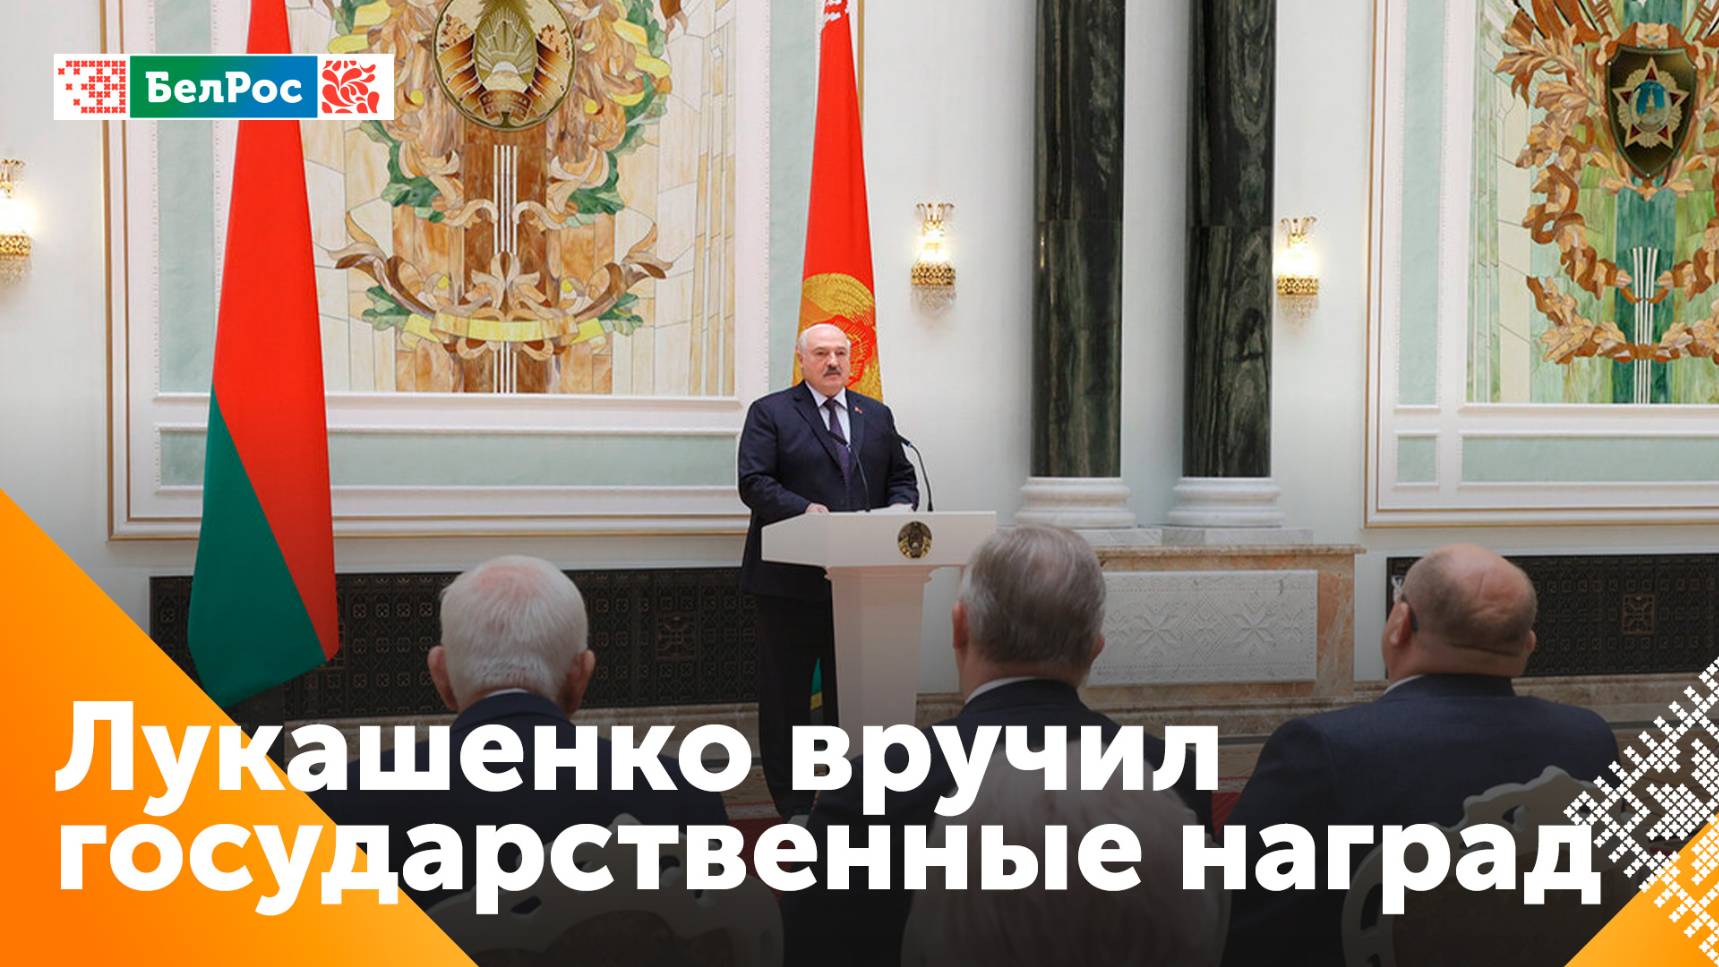 Александр Лукашенко вручил государственные награды заслуженным деятелям различных сфер